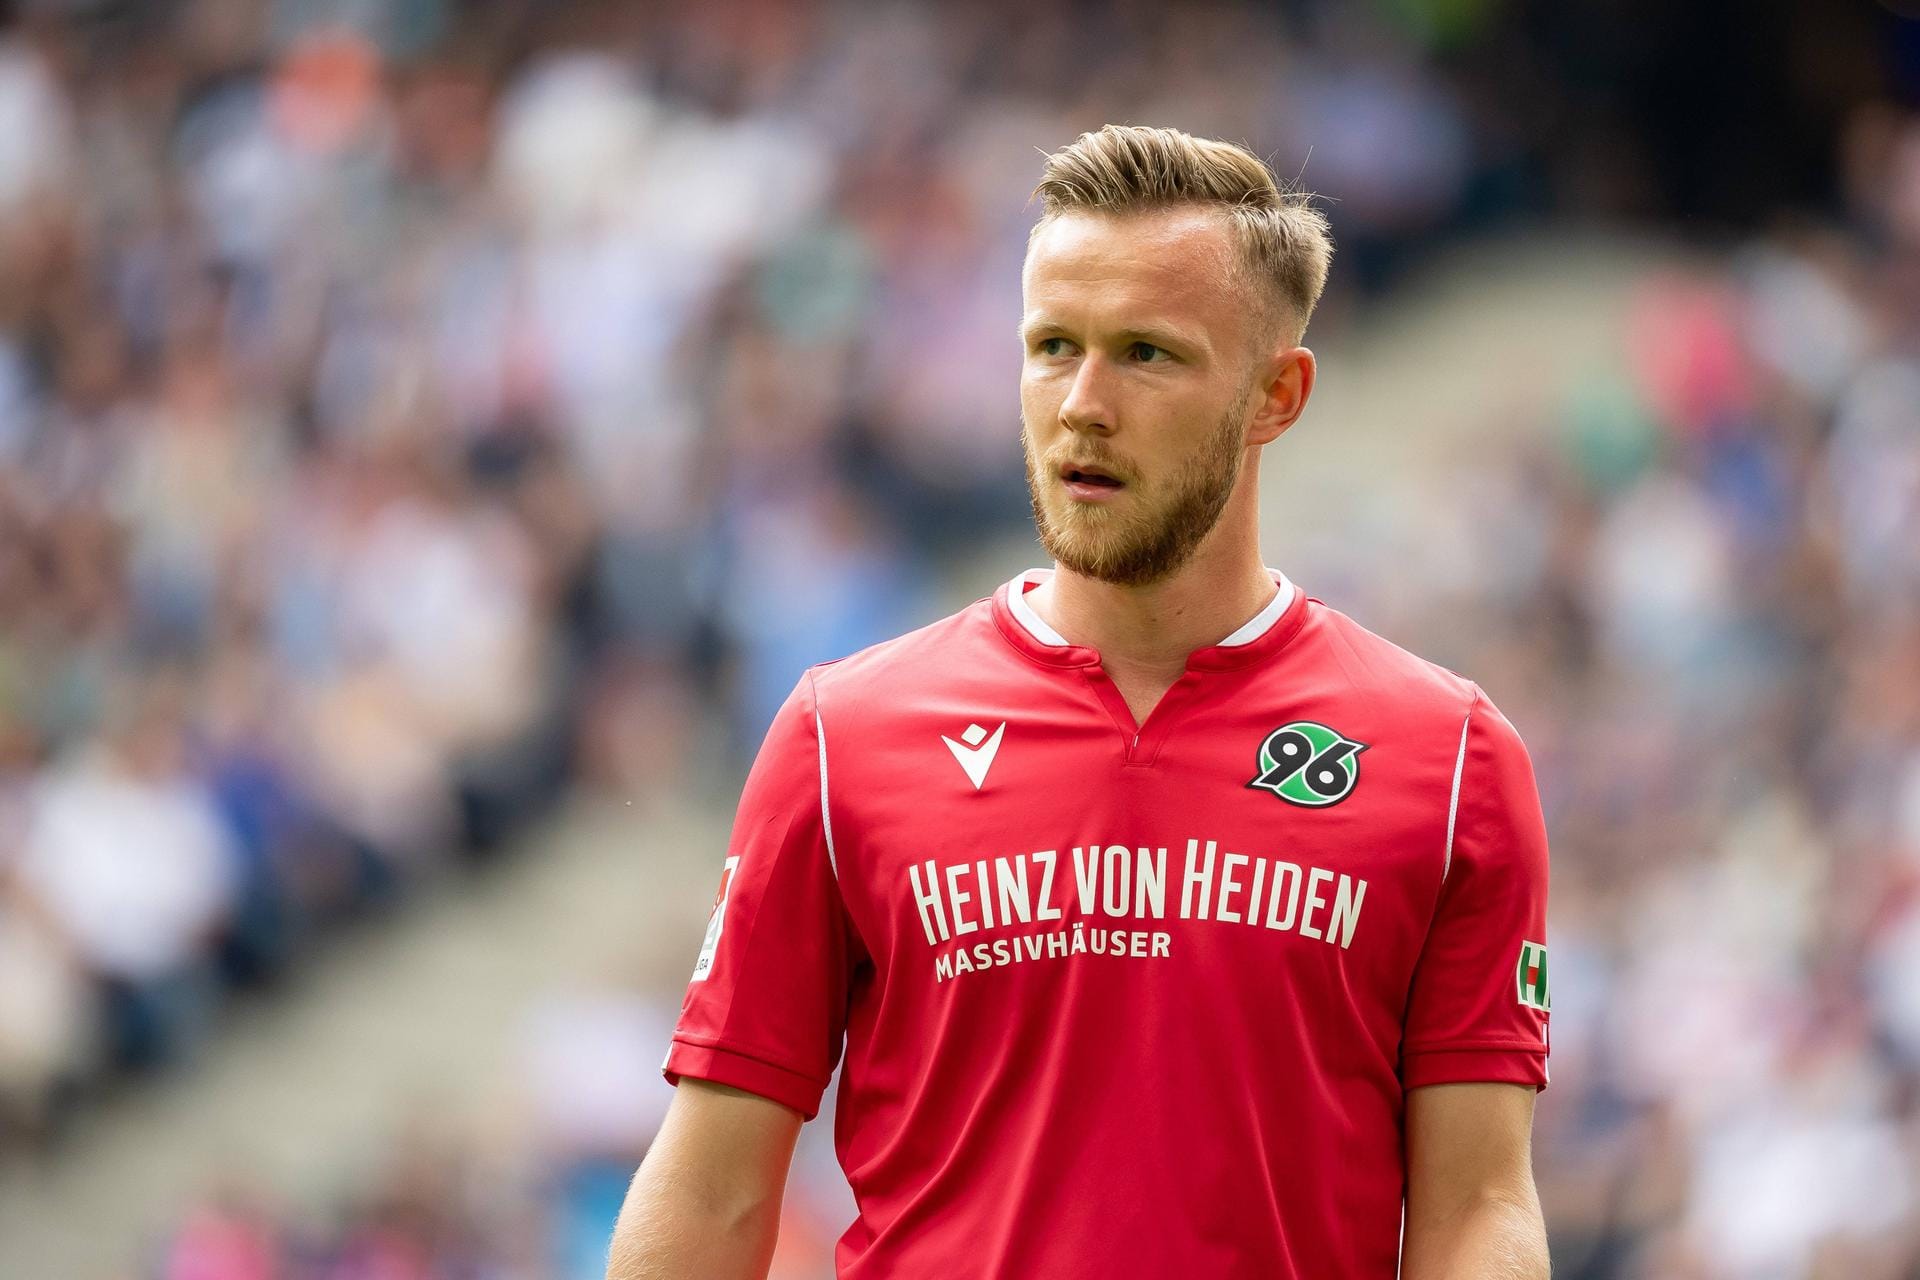 Der 1. FC Union Berlin hat sich die Dienste von Cedric Teuchert gesichert. Der Mittelstürmer des FC Schalke 04, der in der abgelaufenen Spielzeit an den Zweitligisten Hannover 96 verliehen war, wechselt nun an die Alte Försterei. Über die Ablösesumme wurde nichts bekannt.